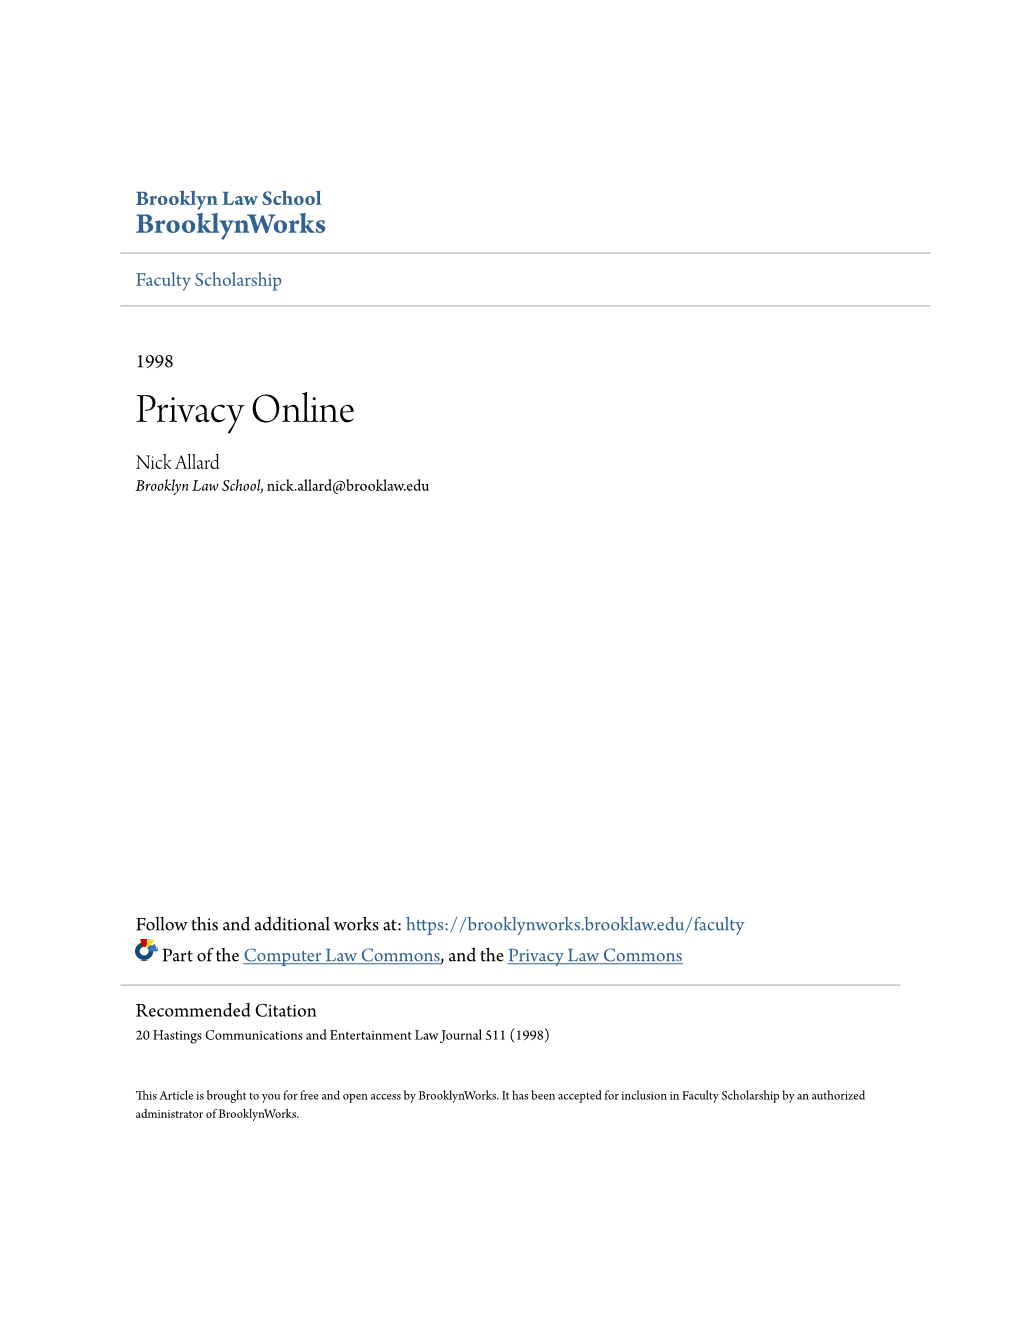 Privacy Online Nick Allard Brooklyn Law School, Nick.Allard@Brooklaw.Edu